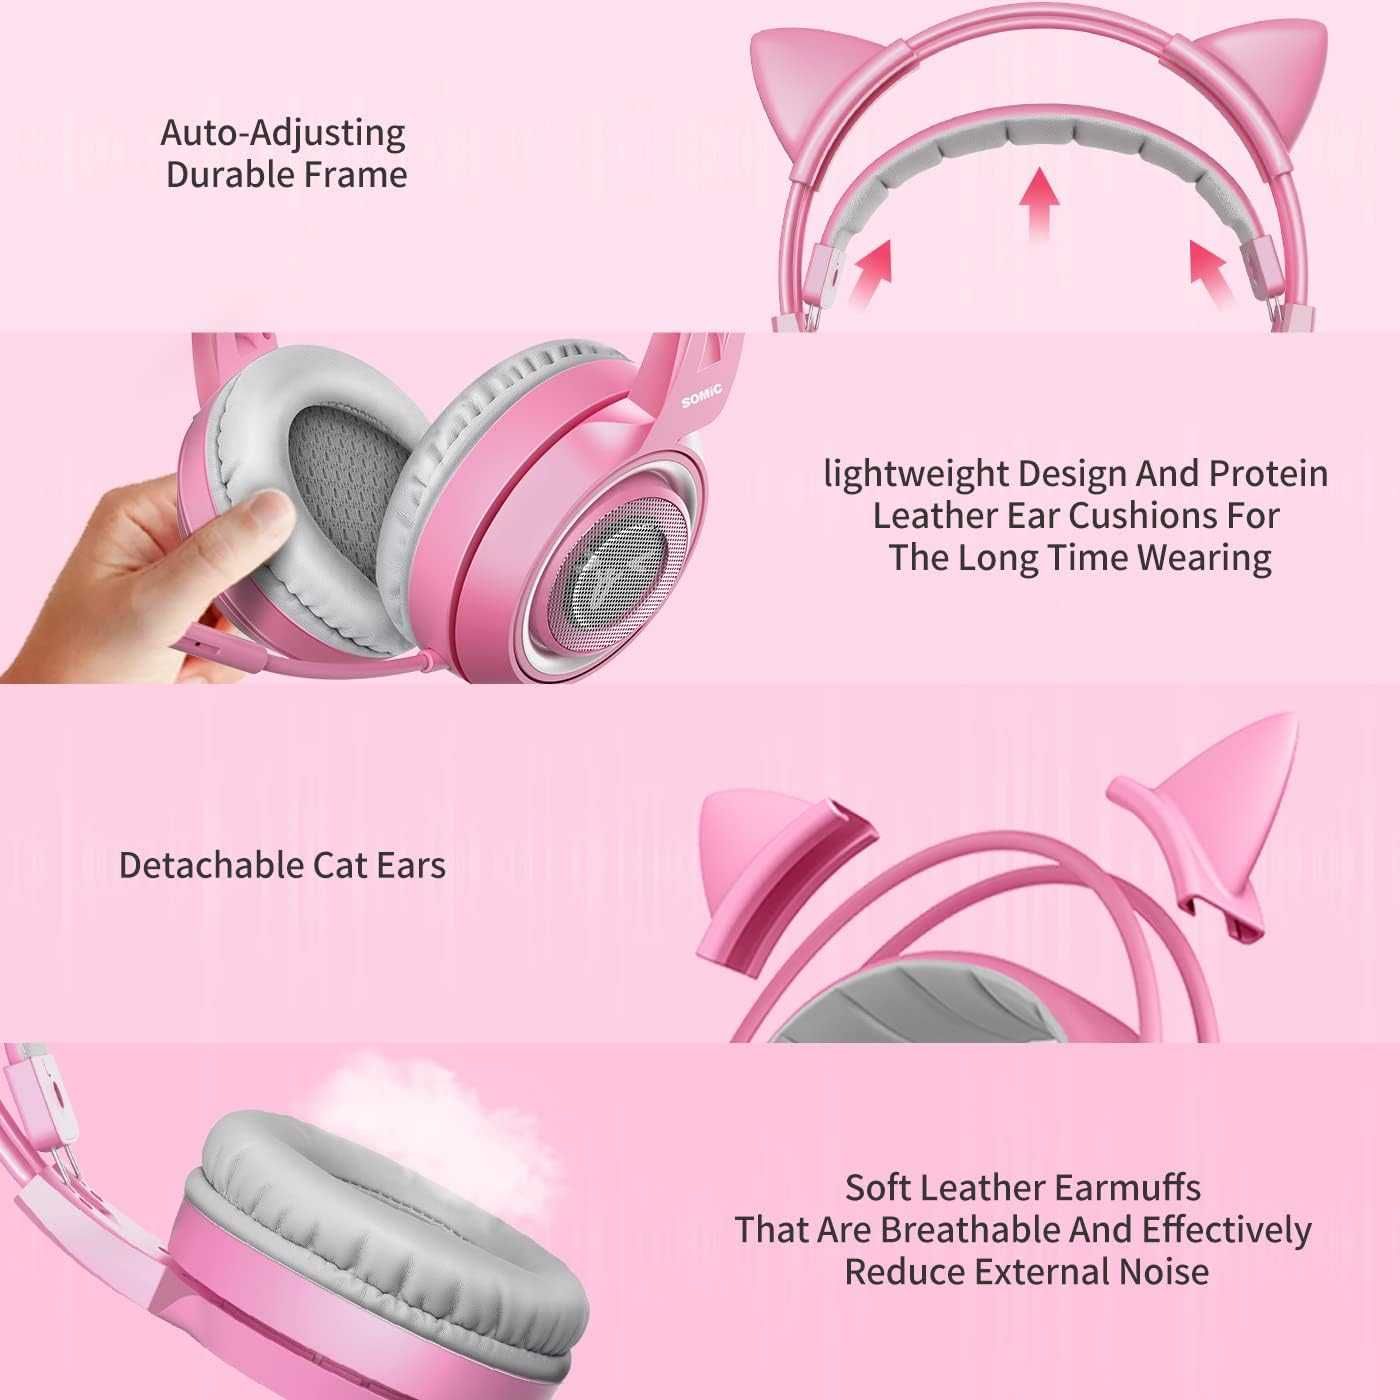 Somic G951S Słuchawki gamingowe przewodowe różowe z uszami